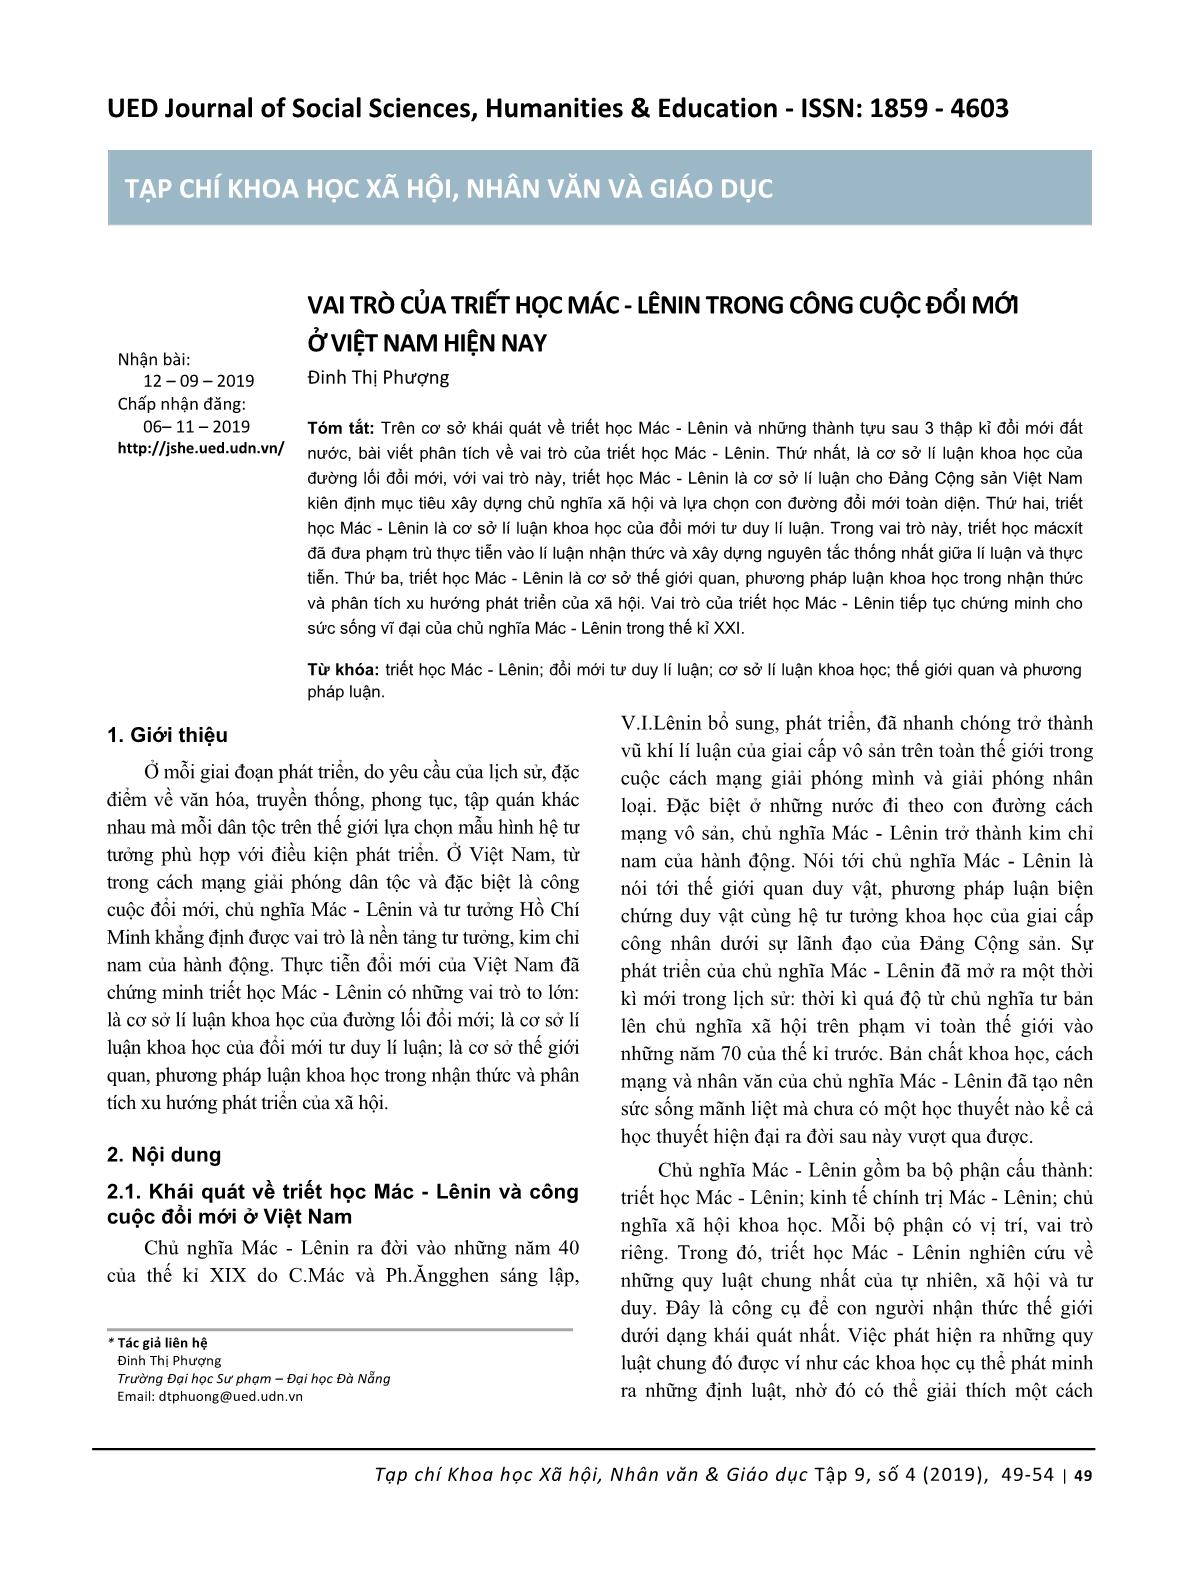 Vai trò của triết học Mác-Lênin trong công cuộc đổi mới ở Việt Nam hiện nay trang 1